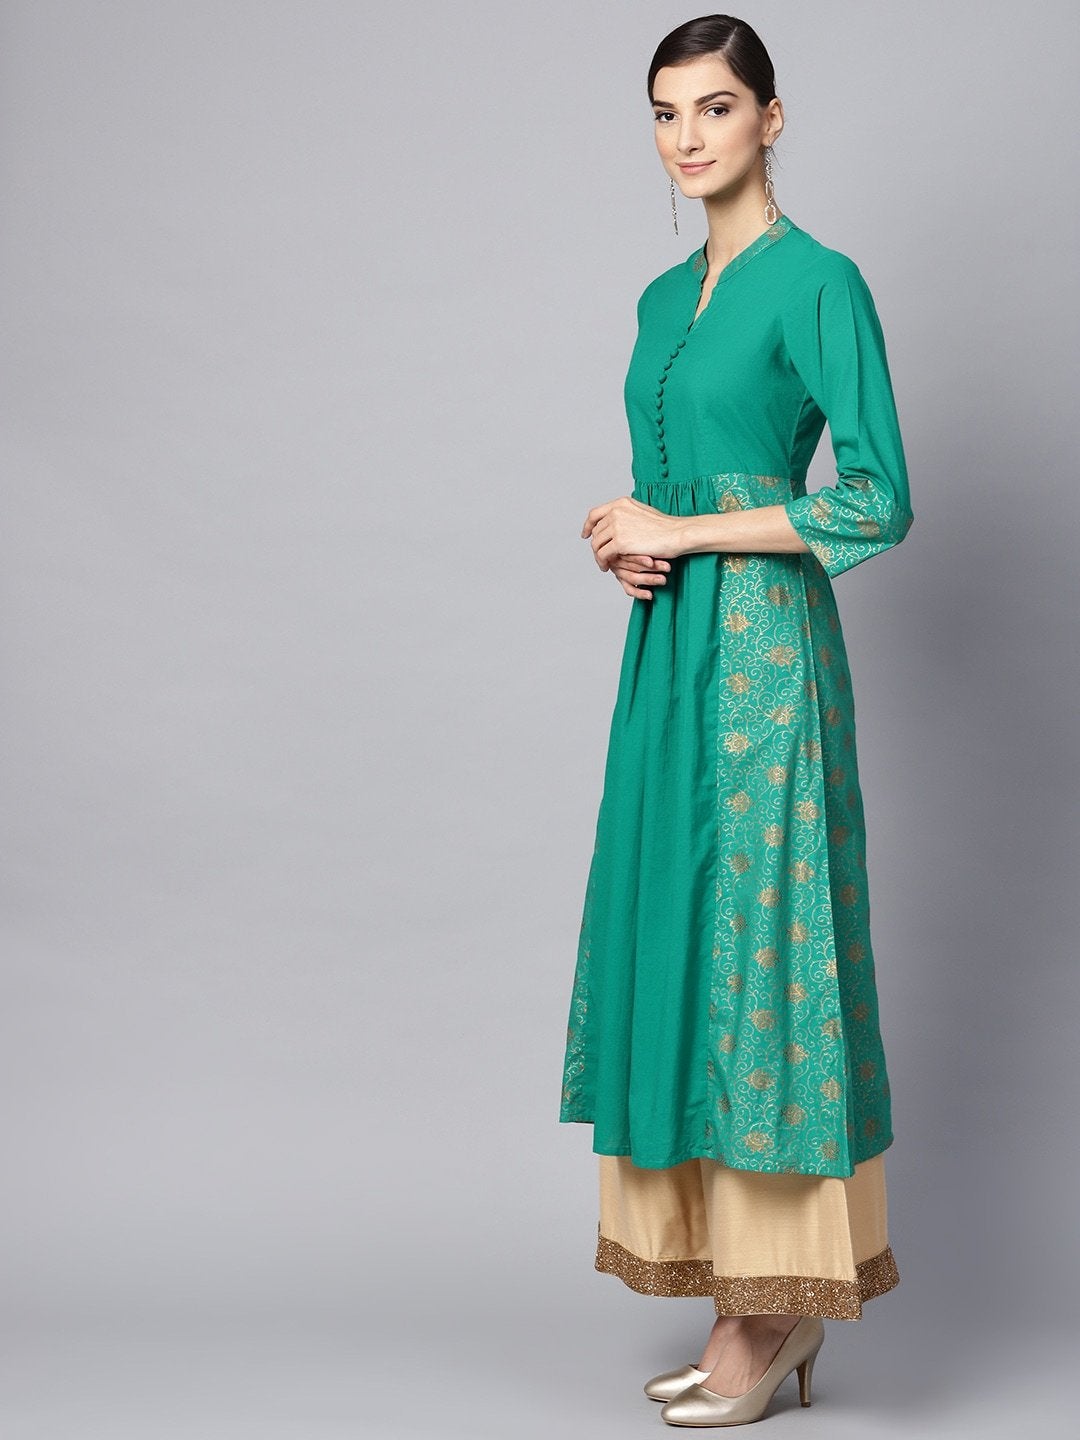 Women's Green & Golden Printed A-Line Kurta - Meeranshi